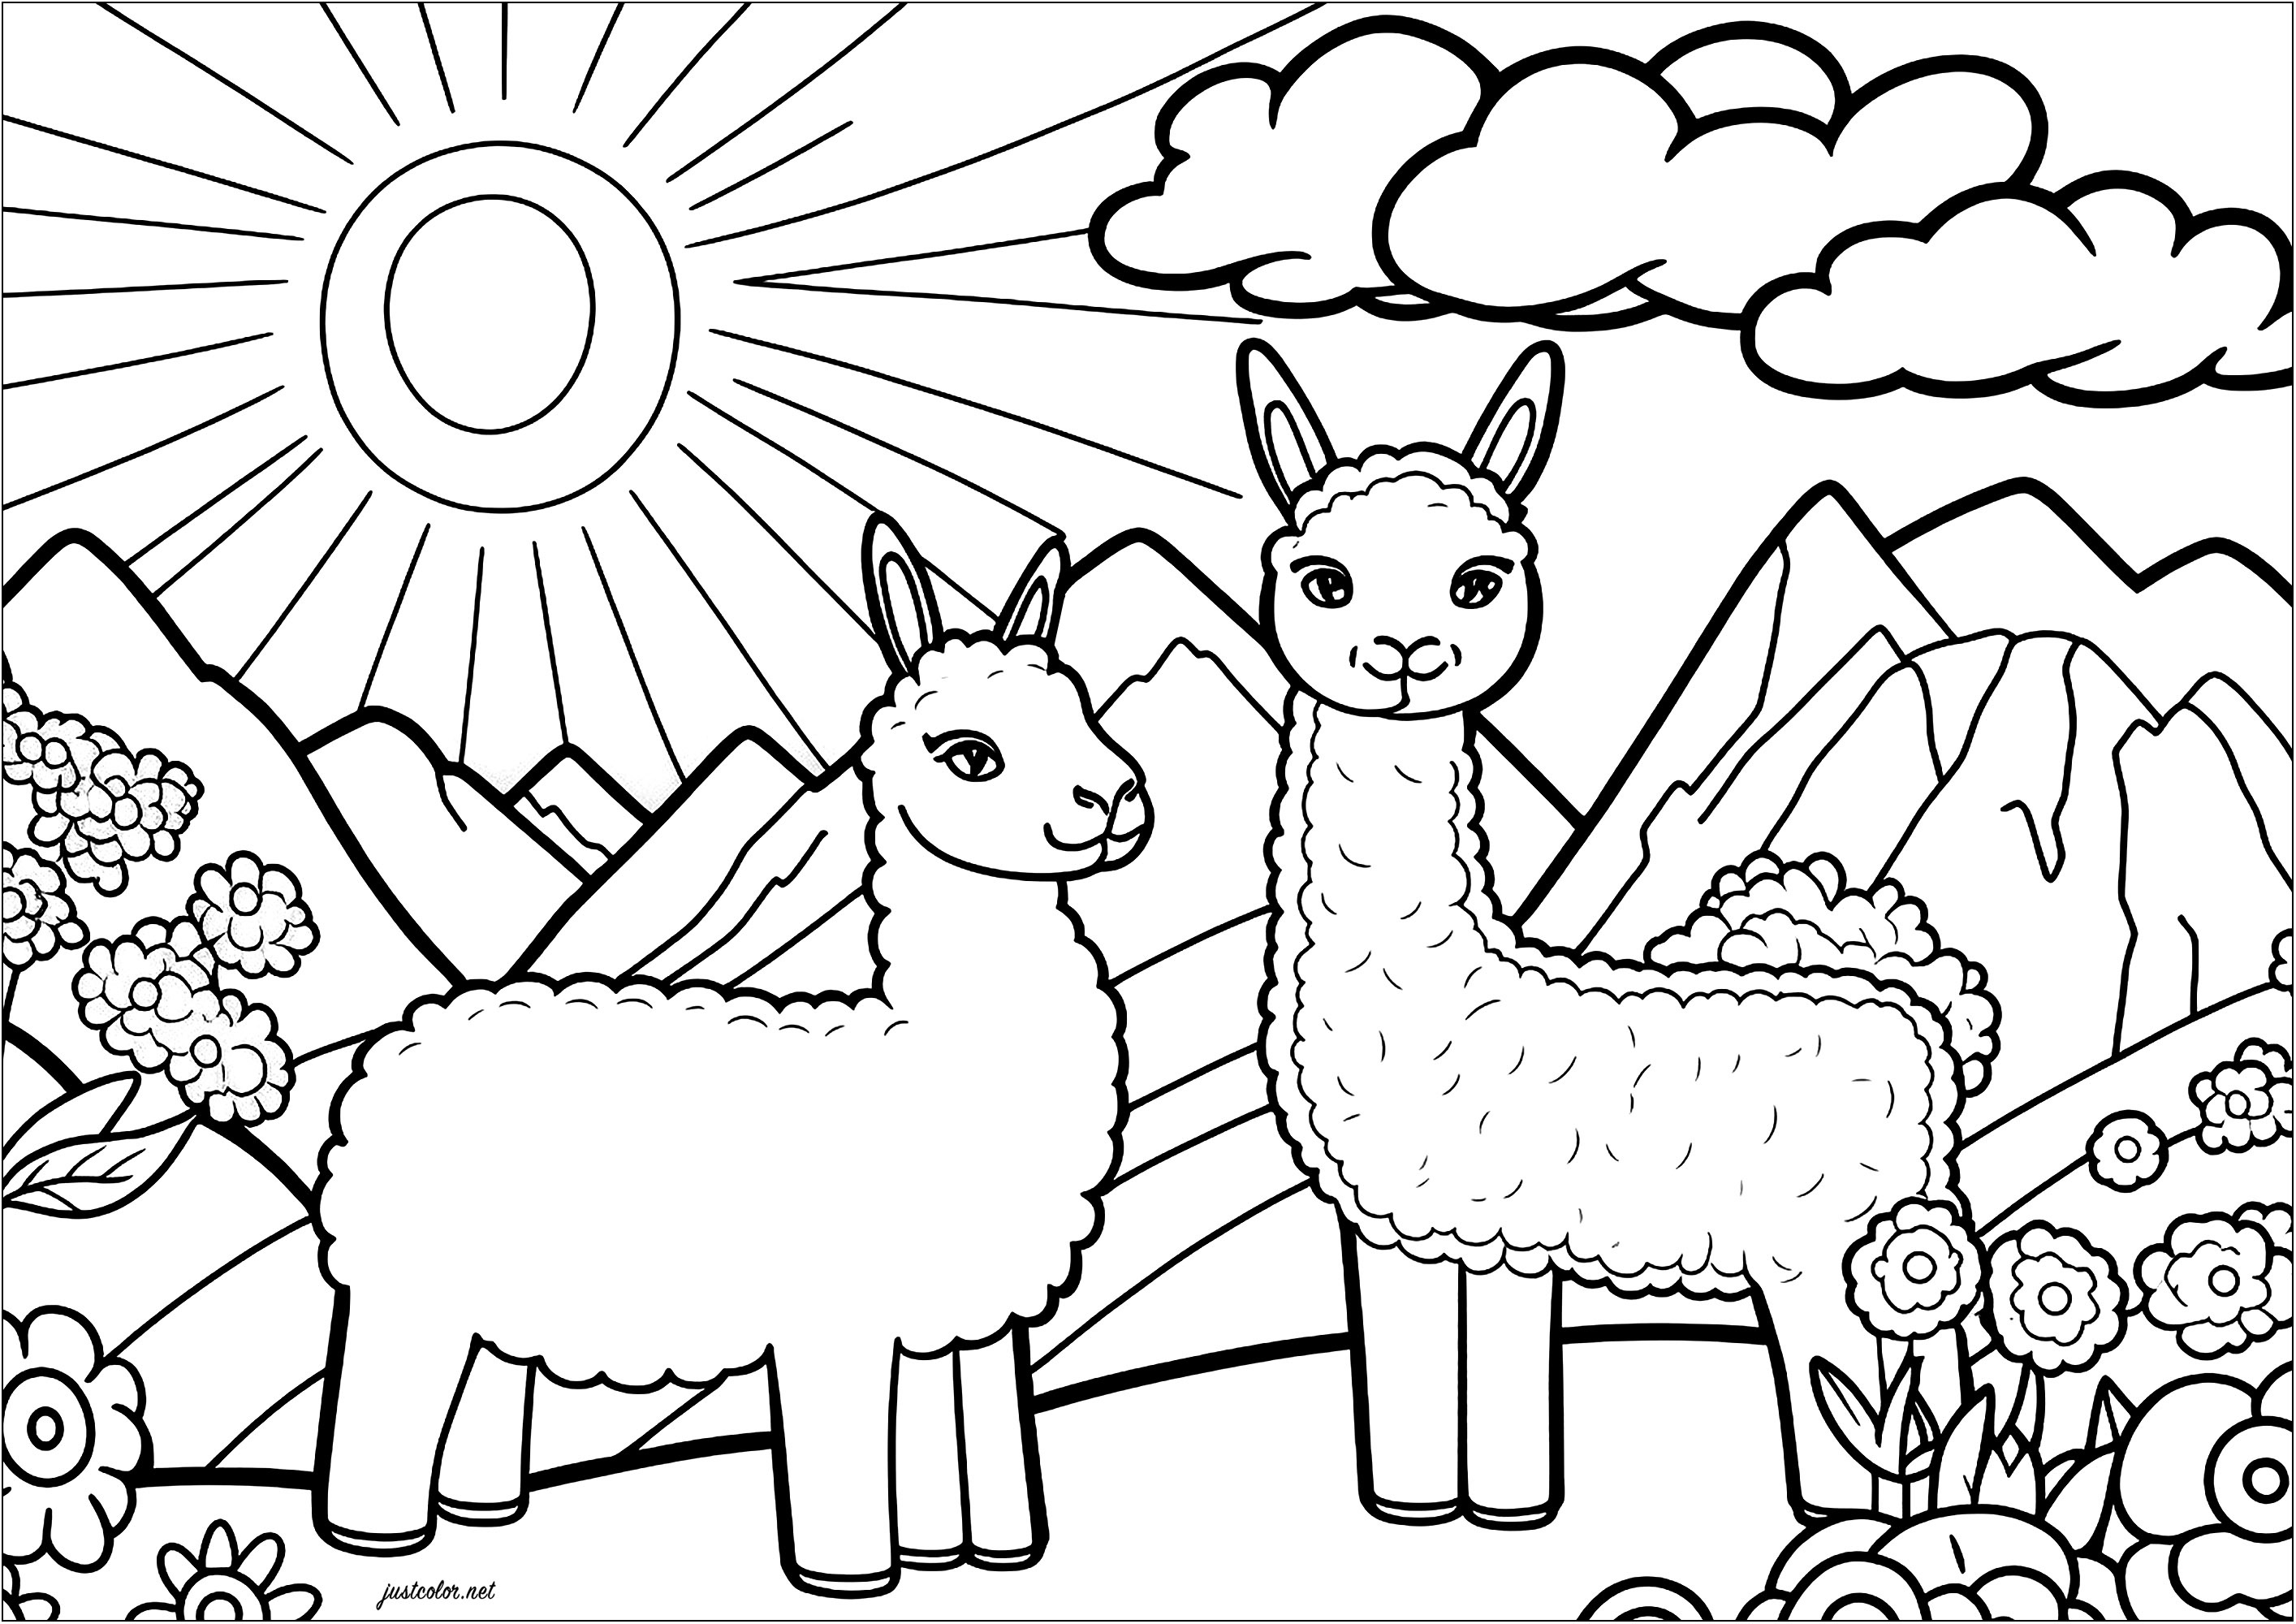 Coloriage de deux lamas rigolos. Deux lamas rigolos qui s'amusent dans un paysage montagneux. En arrière-plan, un grand soleils et quelques nuages. Coloriez également les jolies fleurs qui complètent ce beau dessin, Artiste : IAsabelle